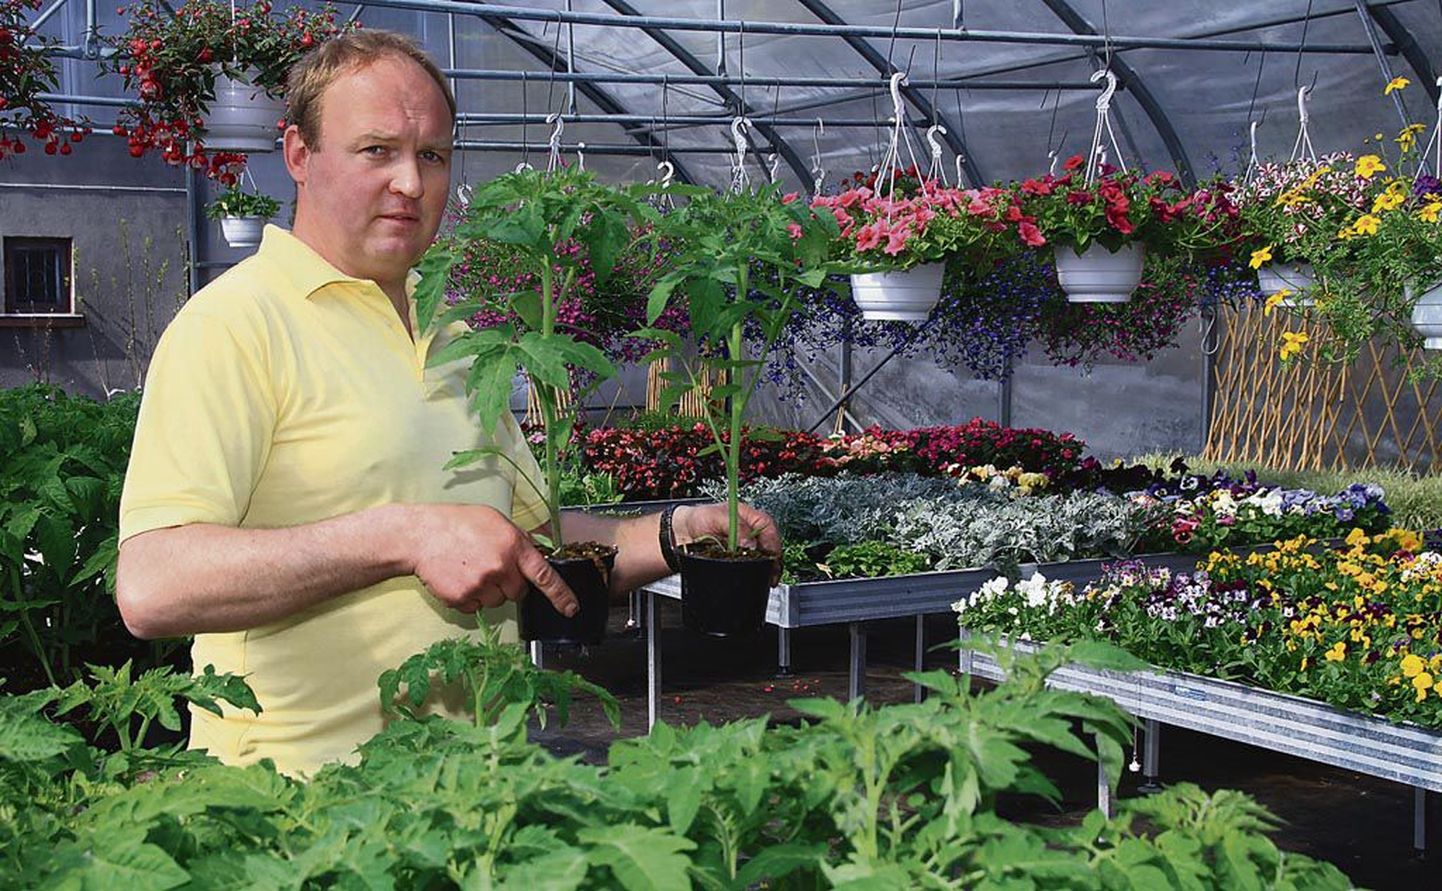 “Lilli ja tomateid küsitakse praegu kõige rohkem,” märkis Tootsi aianduskeskuse juhataja Peeter Kadakas.